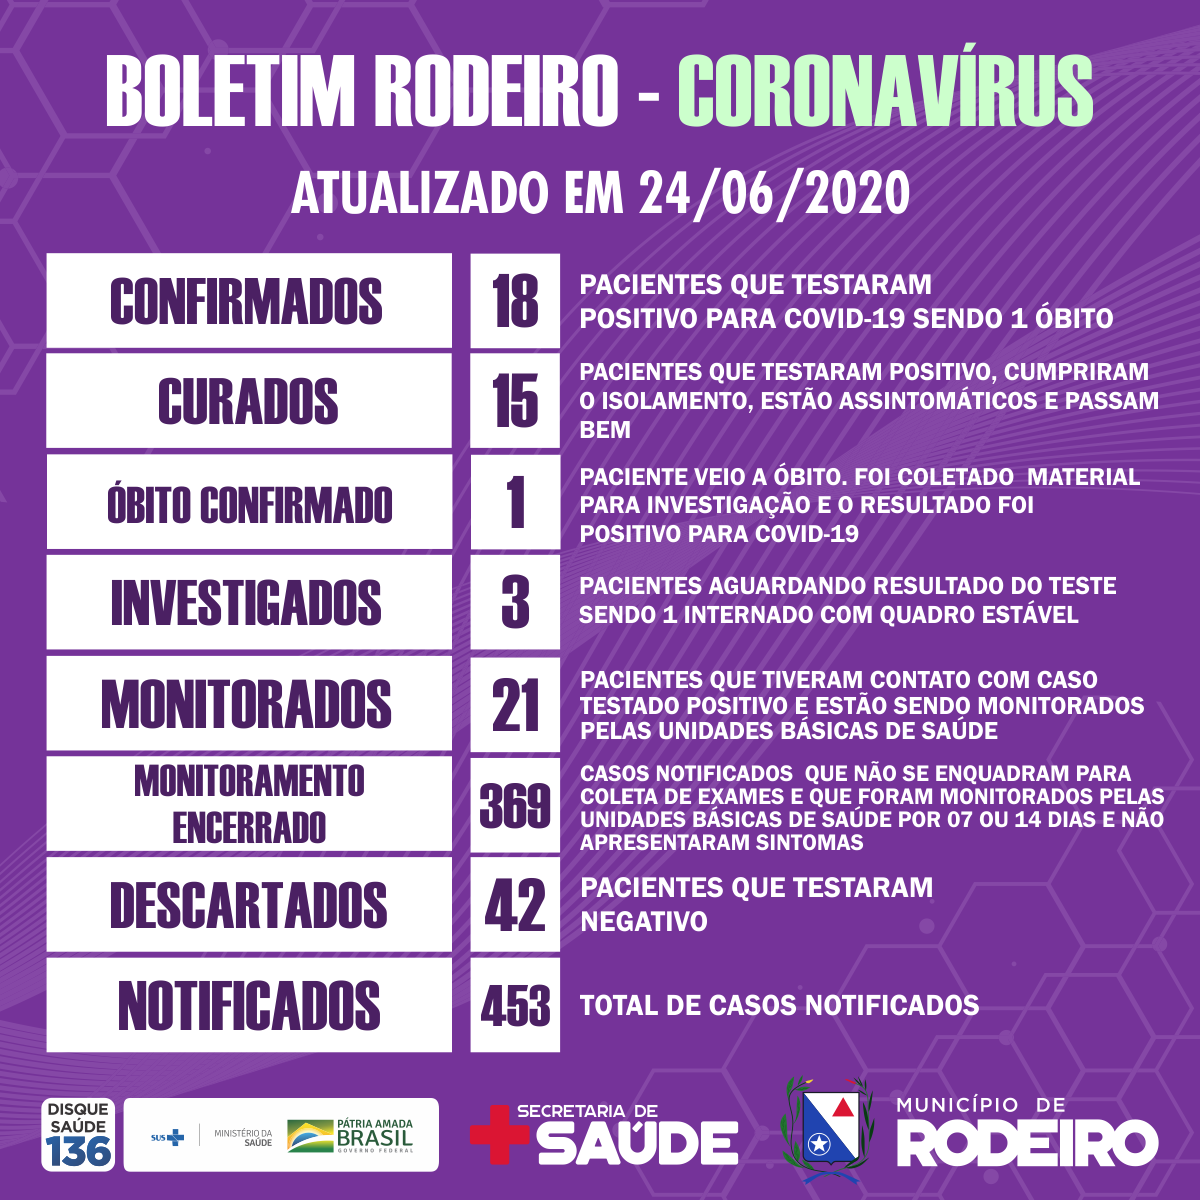 Boletim epidemiológico do Município de Rodeiro coronavírus, atualizado em 24/06/2020